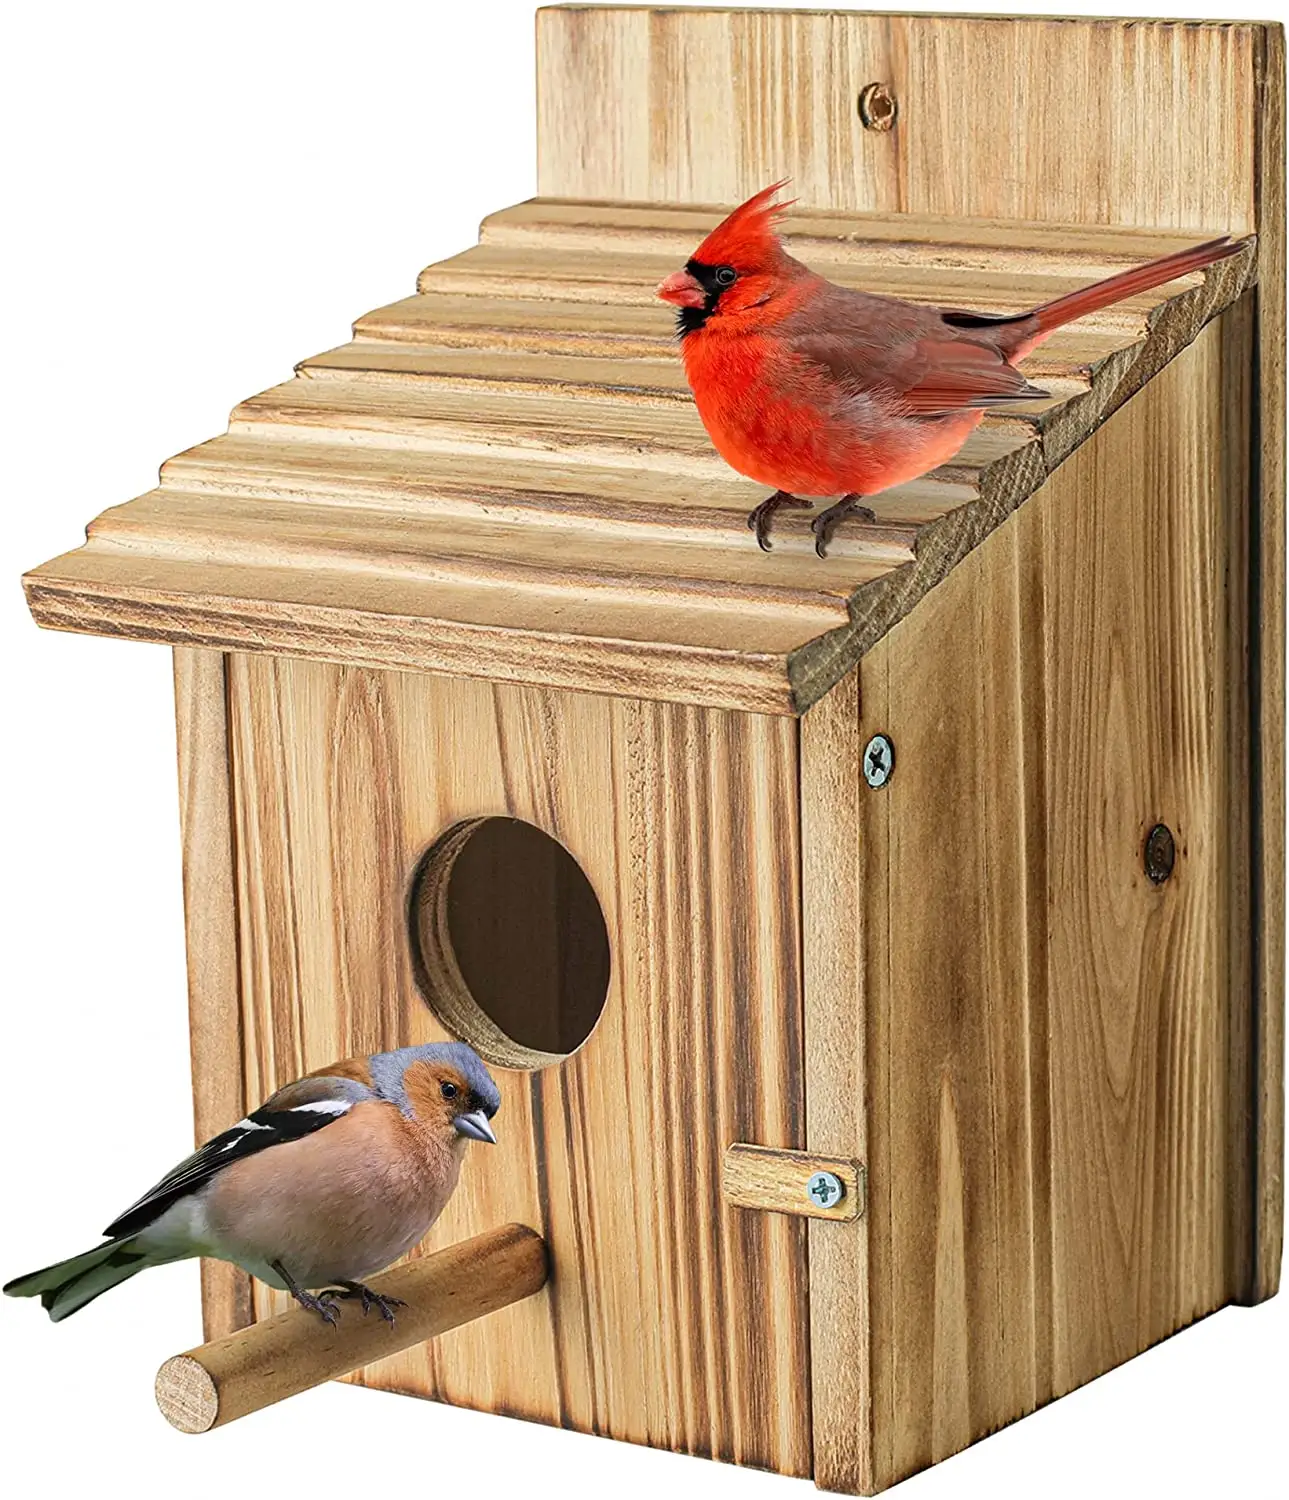 로빈을 위한 교수형 작은 새 둥지 상자 나무 둥지, 벌새, 잉꼬, 파랑새